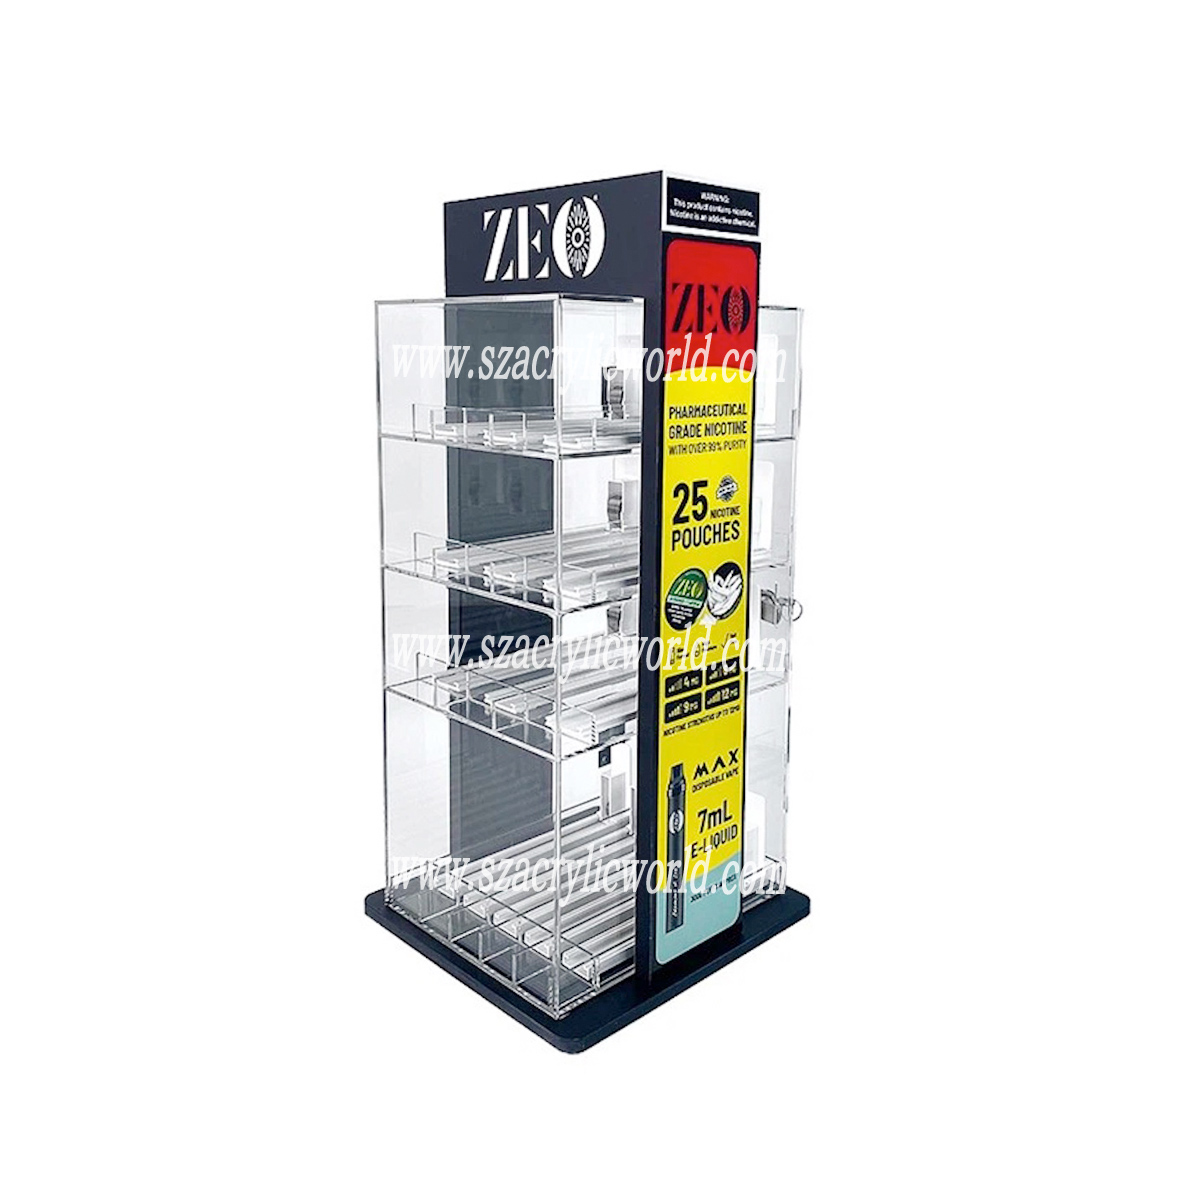 Acrylic Disposable Electronic Cigarette Display stand pikeun toko ritel vape disposable